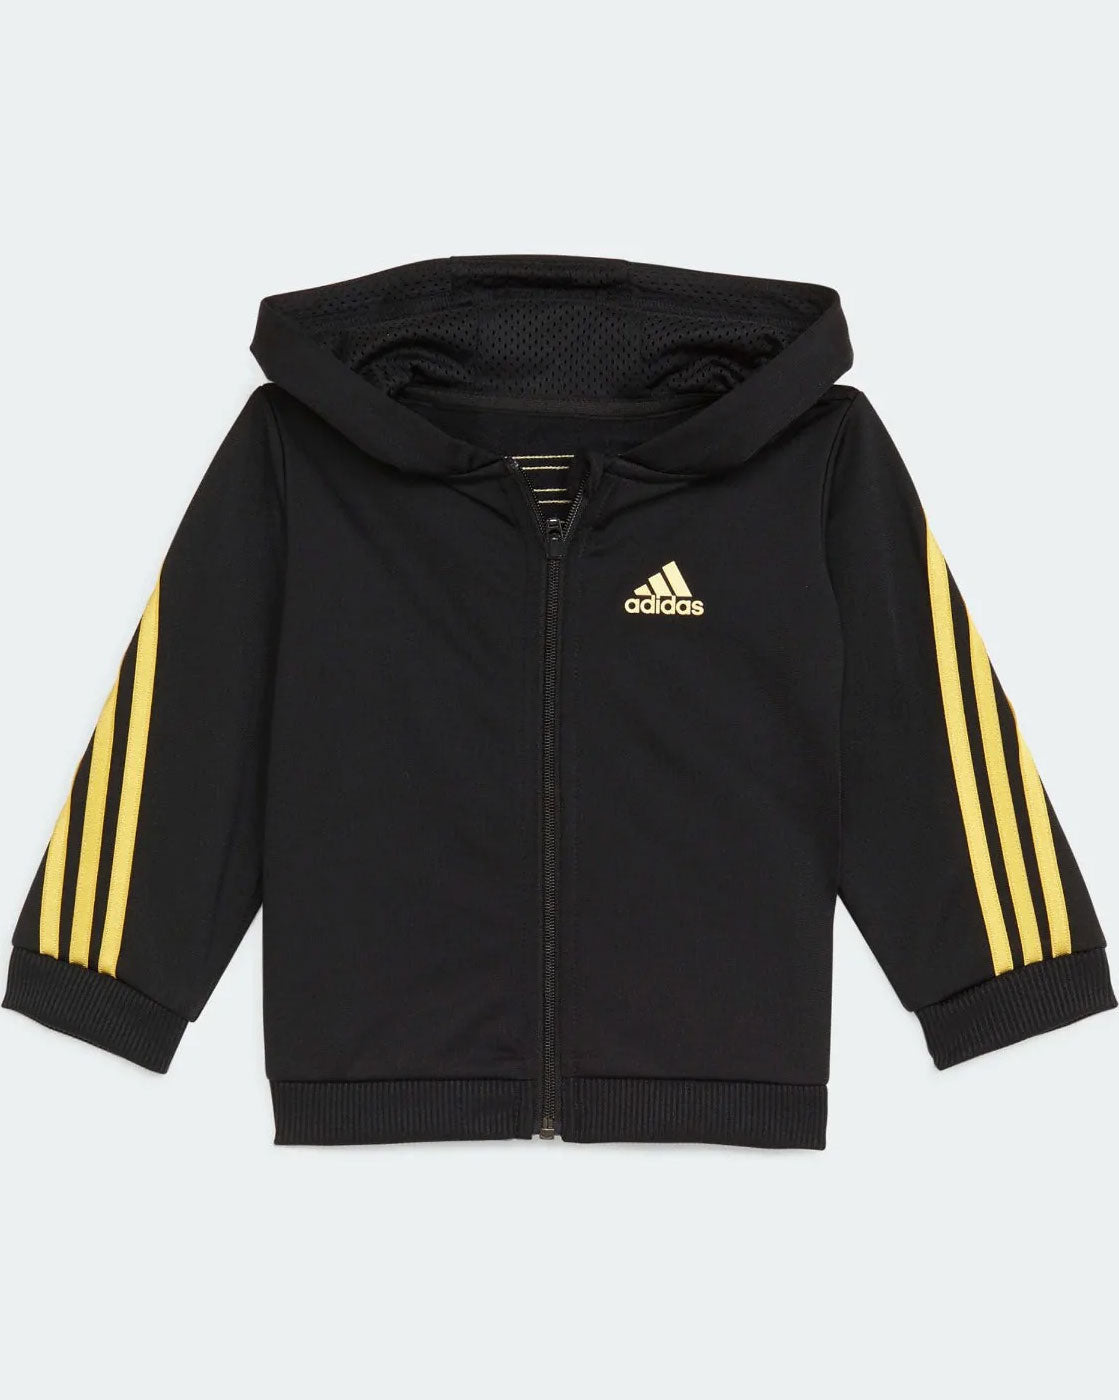 Adidas Baby Shiny Tracksuit Set - Black/Gold